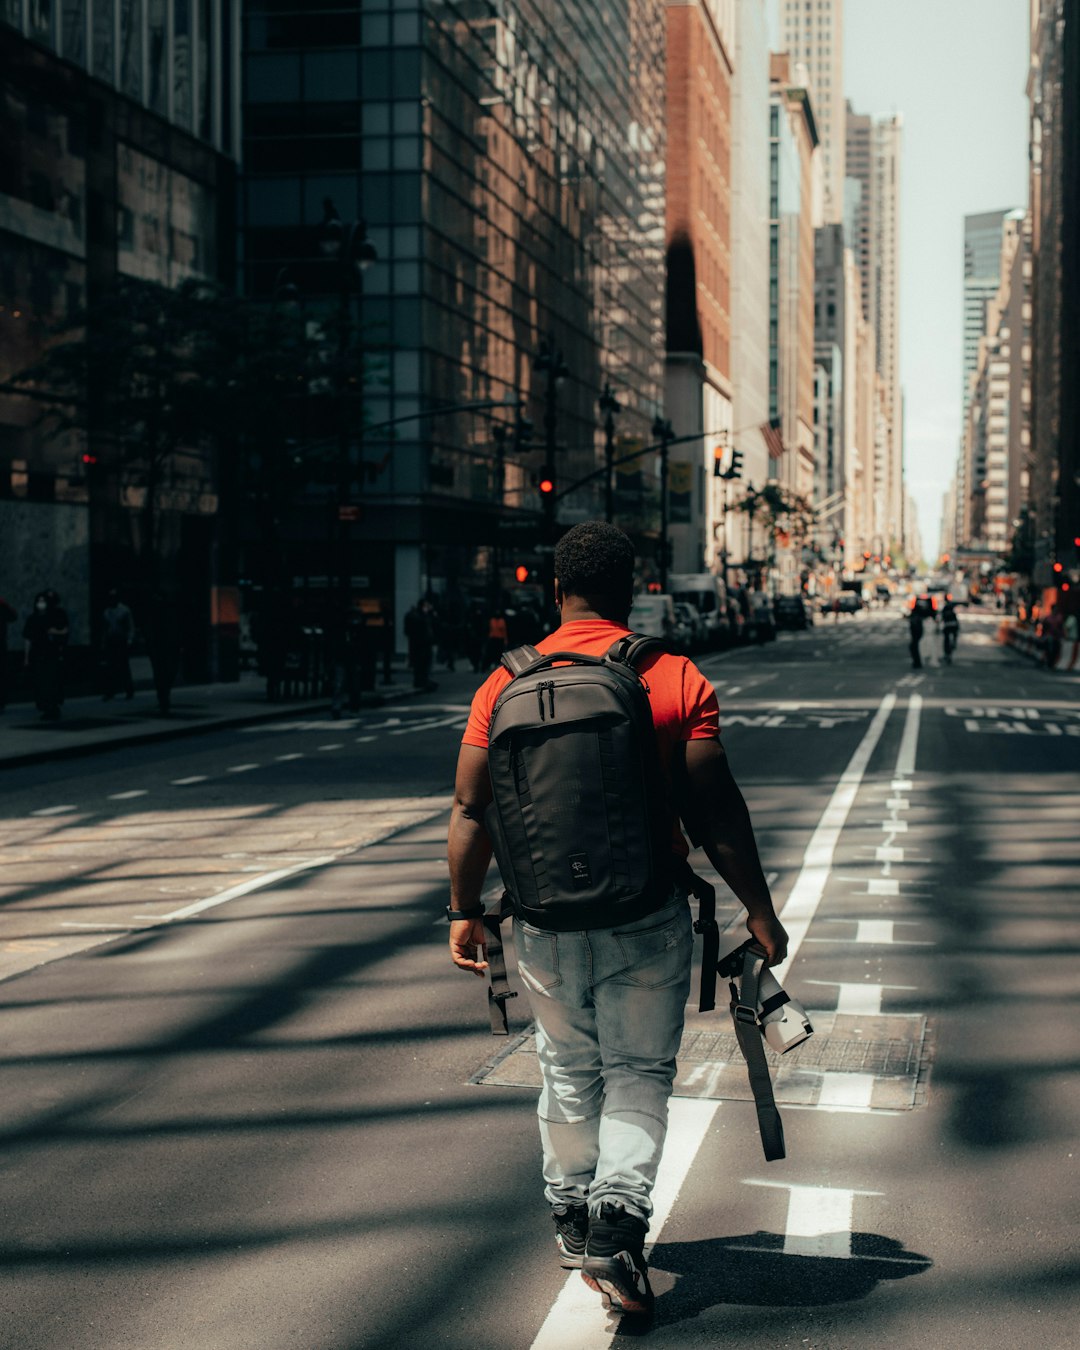 man in red backpack walking on pedestrian lane during daytime